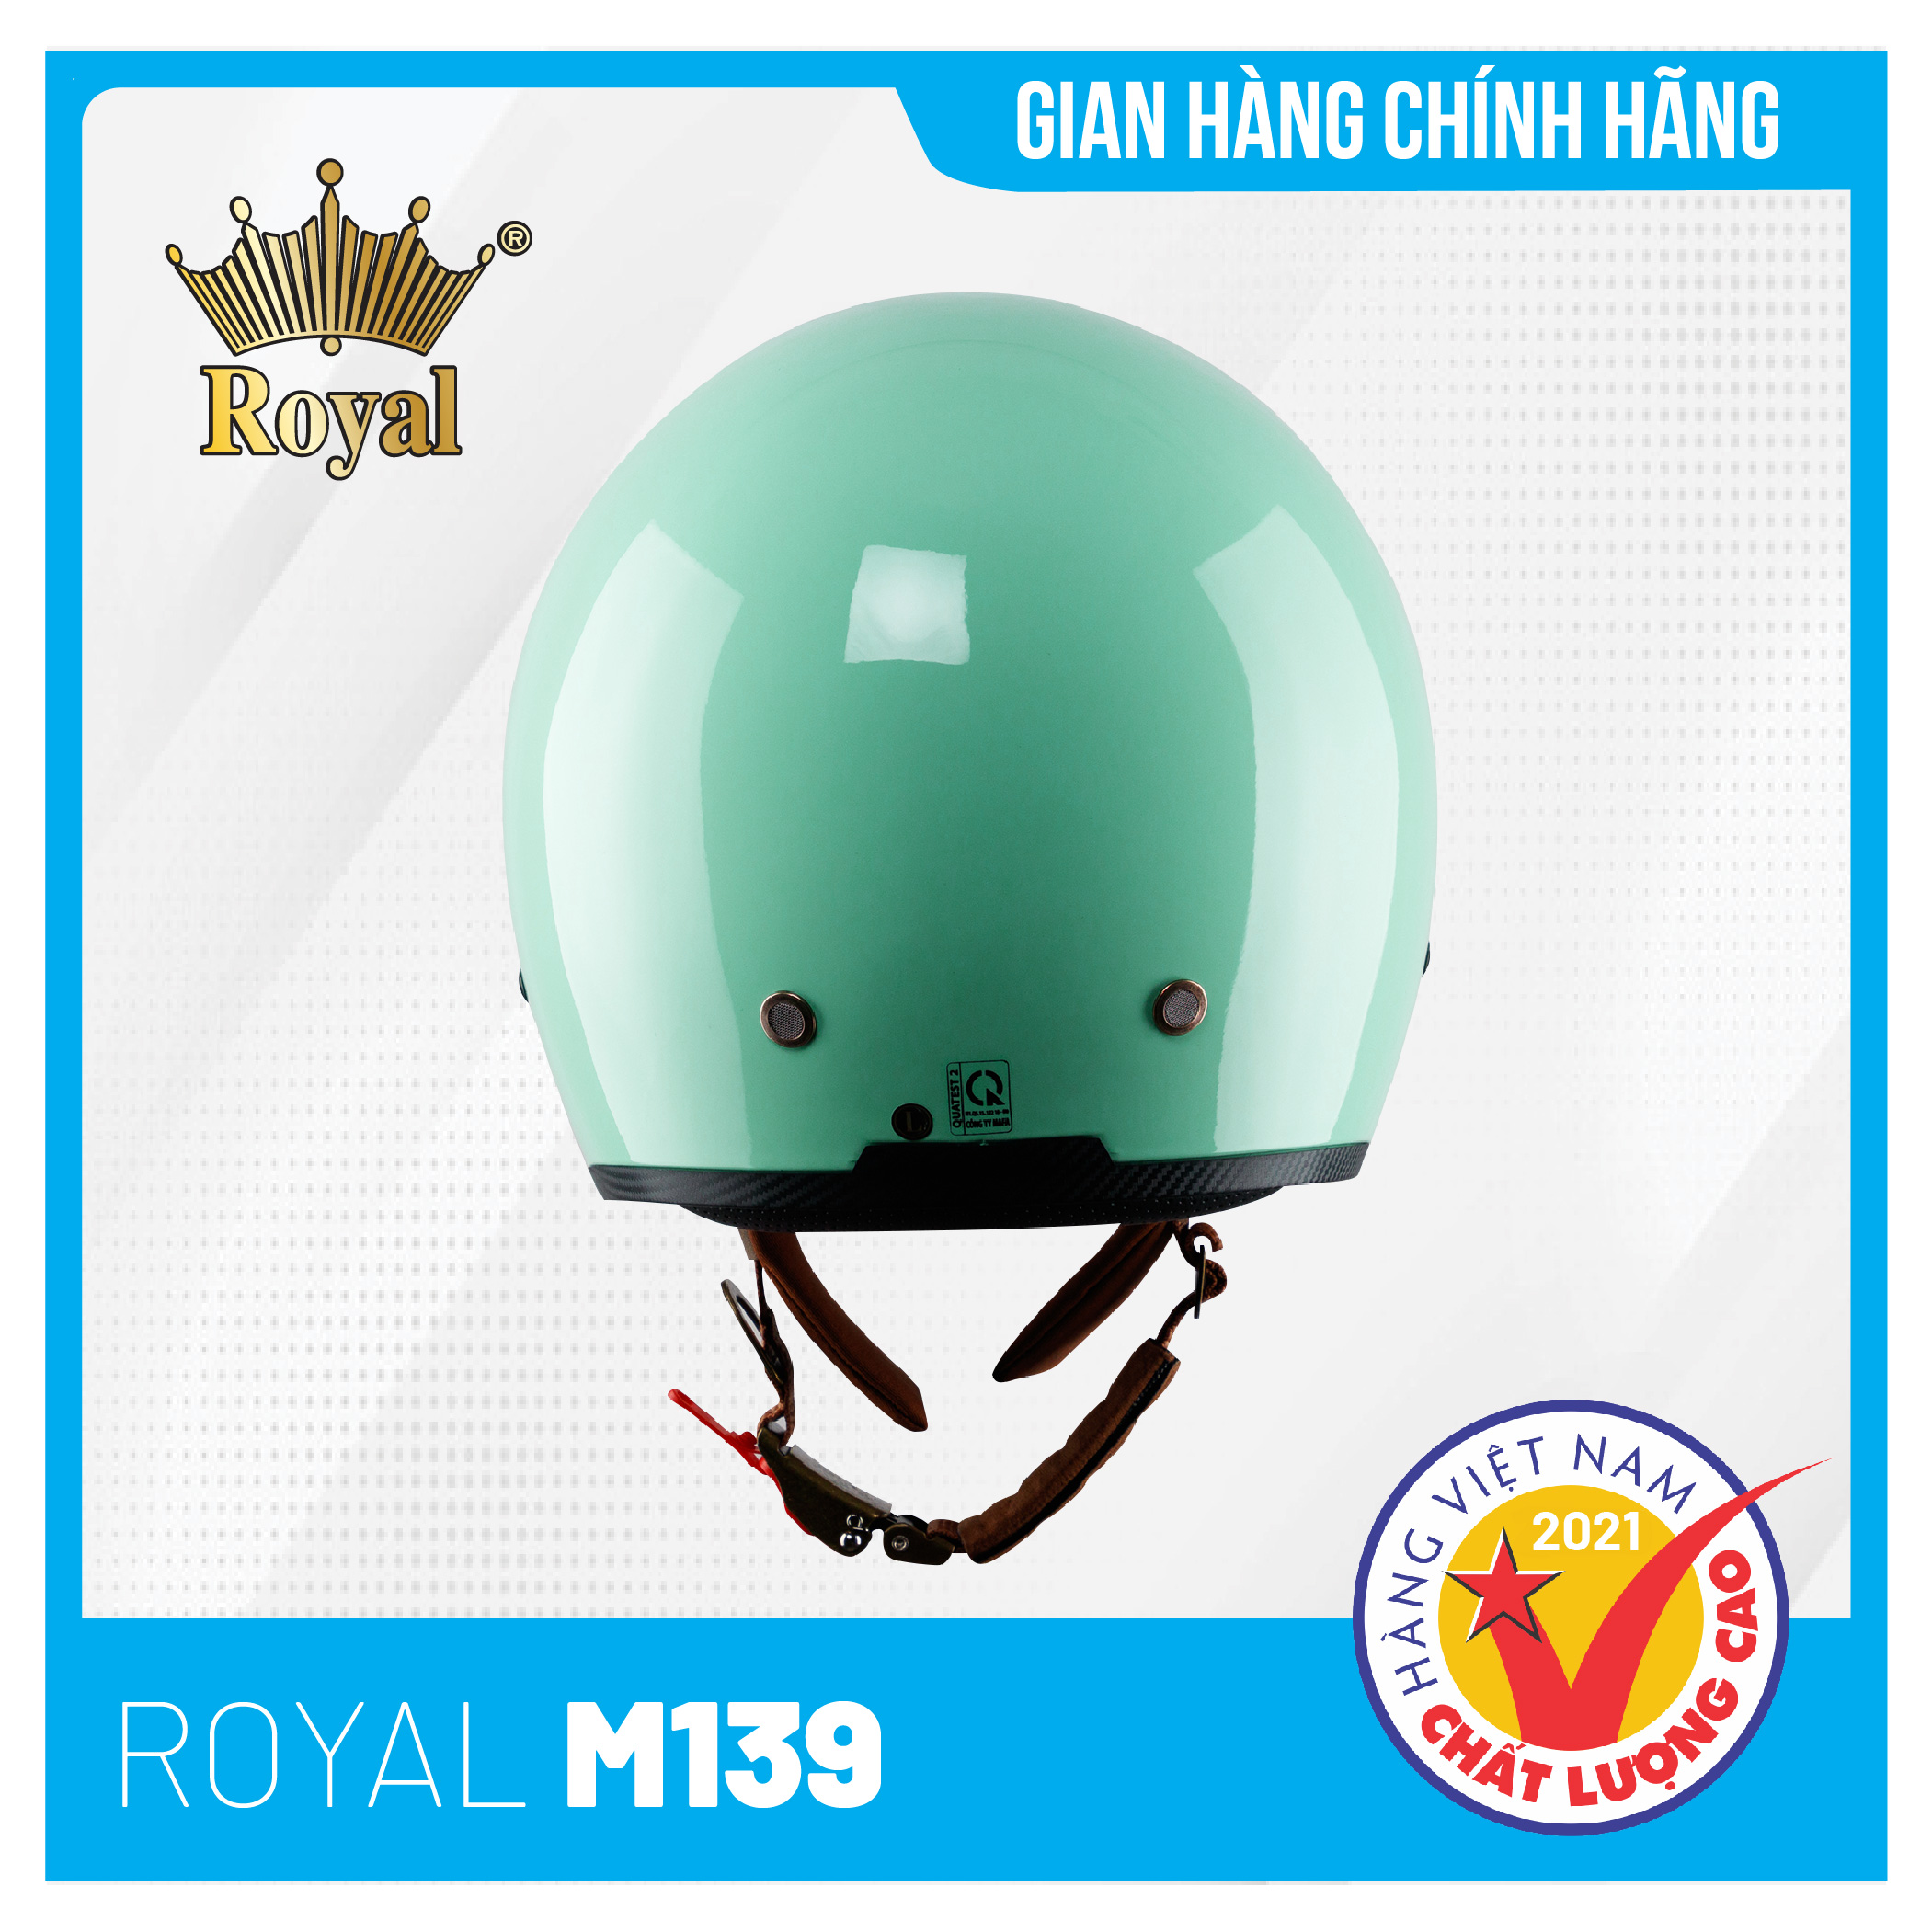 Nón bảo hiểm Royal M139 Kính Âm Trơn Sành Điệu, Trẻ Trung, Thời Thượng - Xanh Ngọc Bóng - Size XL